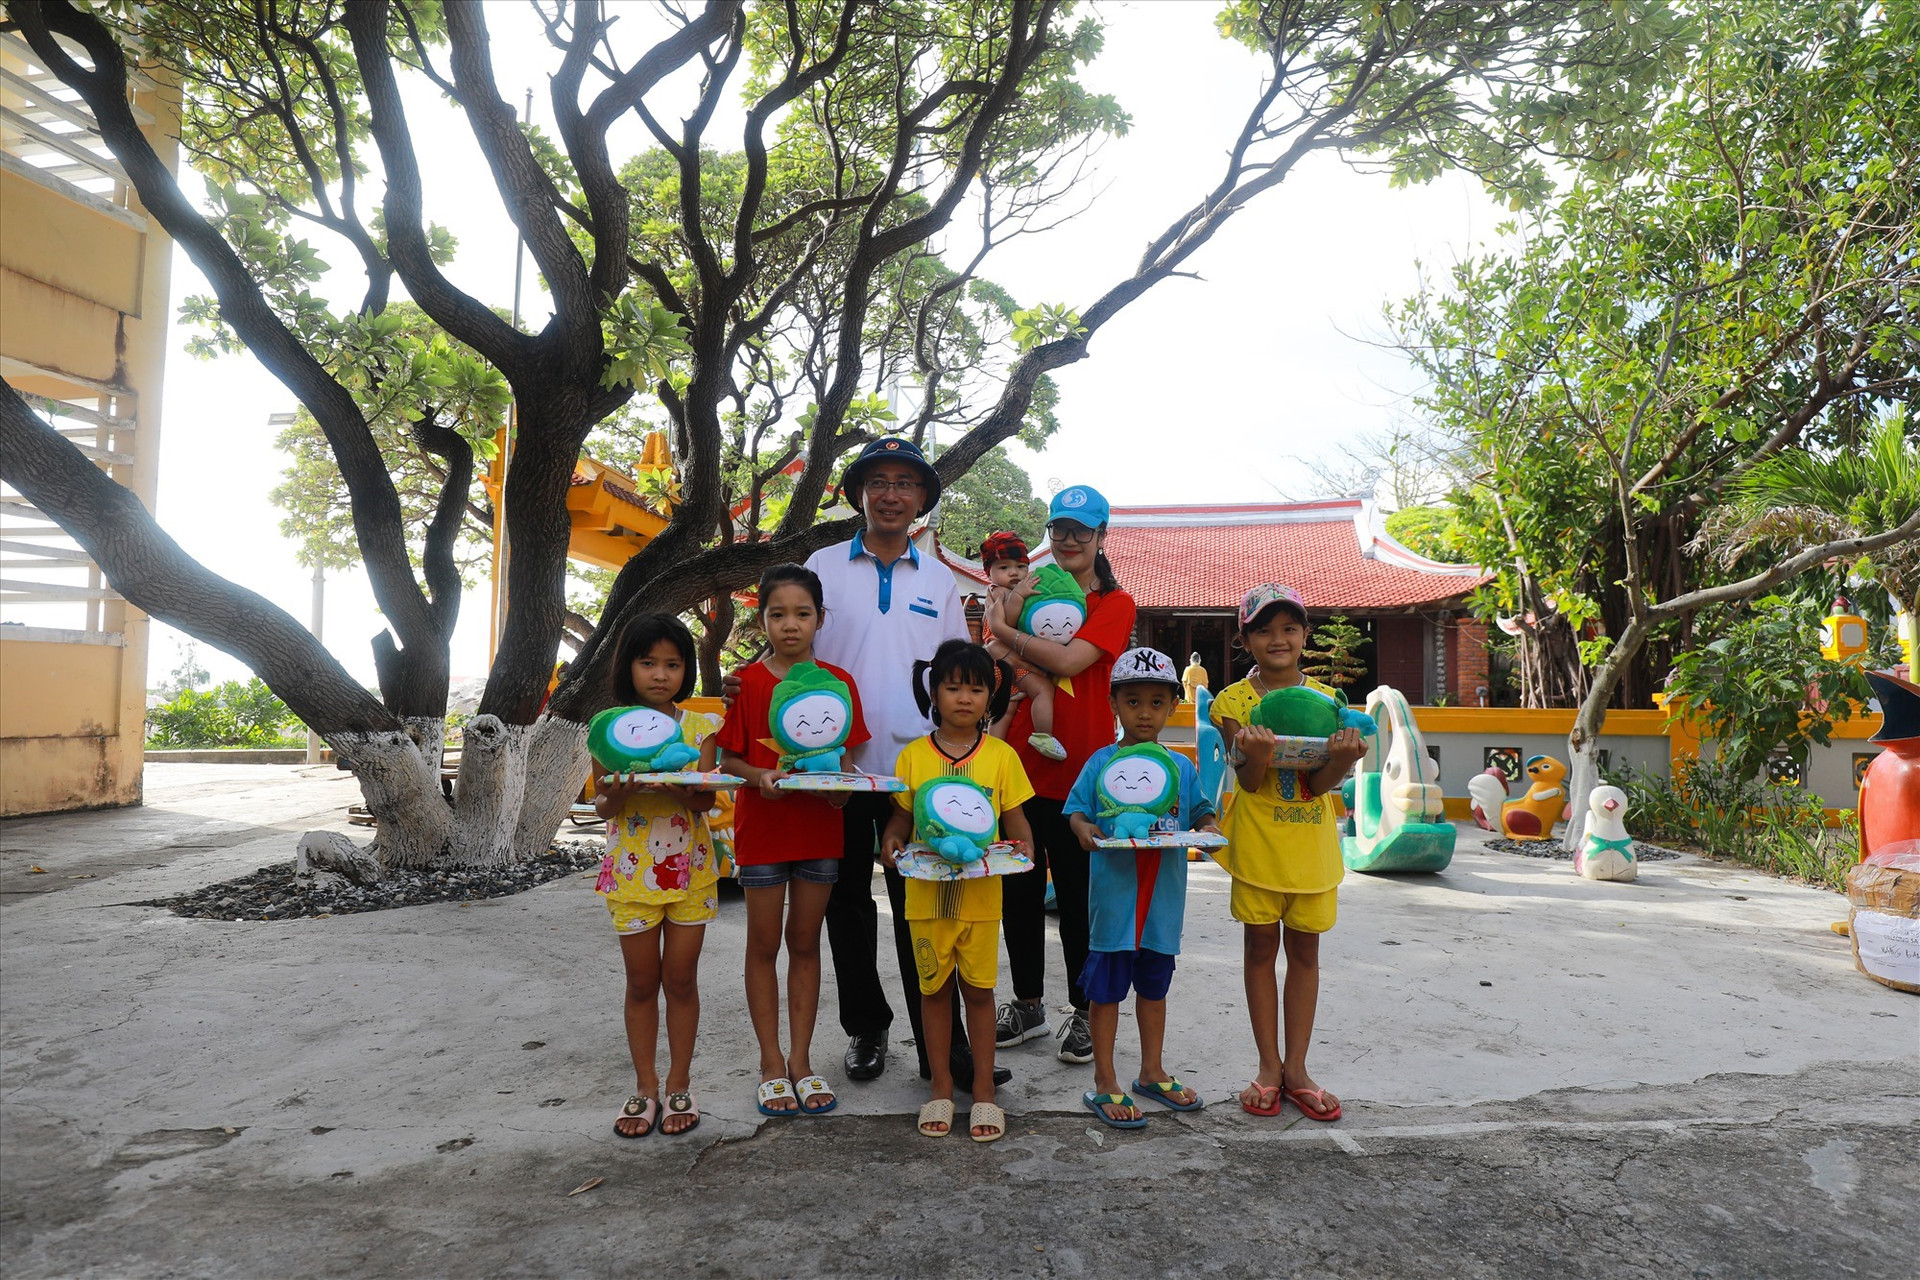 Nụ cười lũ trẻ khi được nhận sách vở, đồ chơi từ các thành viên của Câu lạc bộ Tuổi trẻ vì biển đảo quê hương và đoàn công tác. Ảnh: T.C